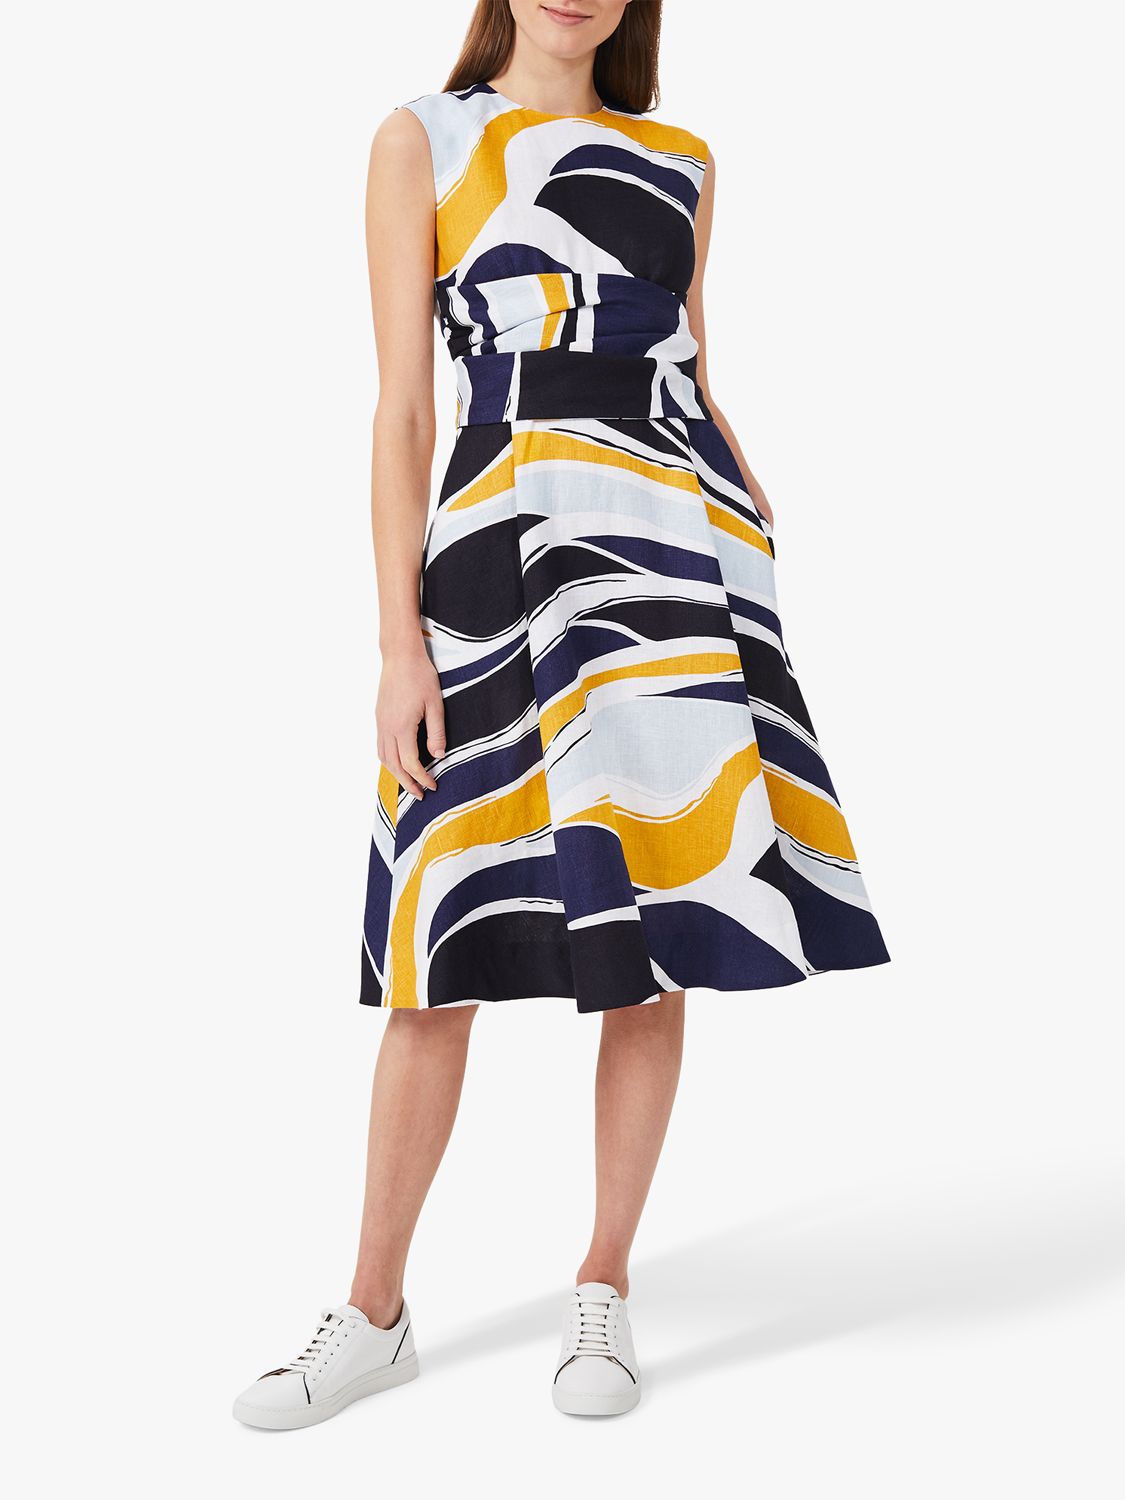 Hobbs Twitchill Льняное платье длиной до колена с абстрактным рисунком, Многоцветный